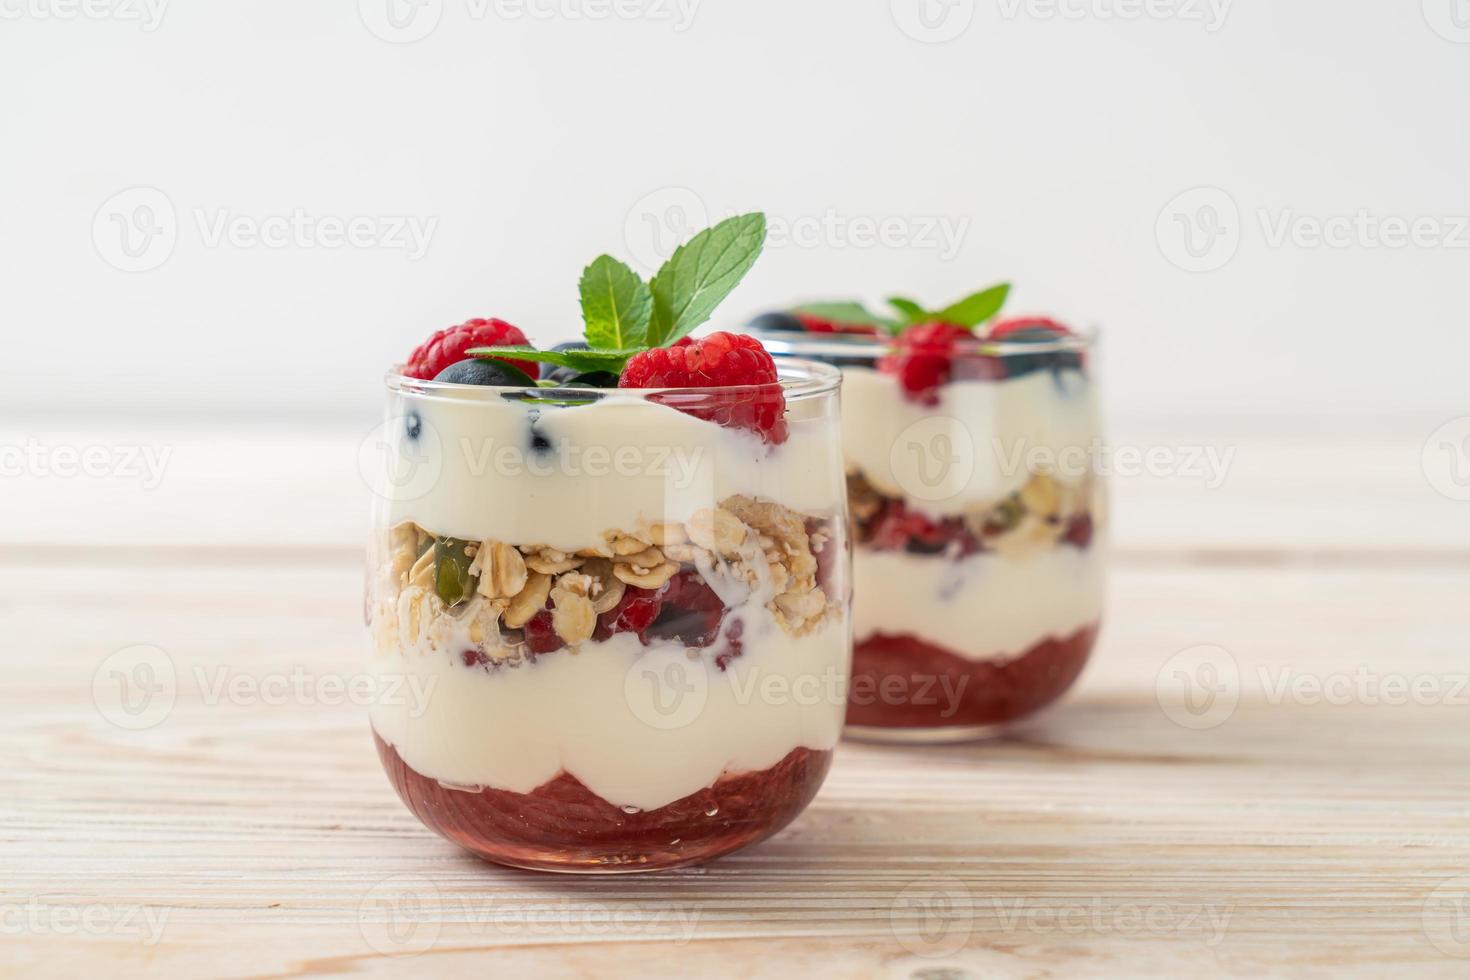 frambuesa y arándano casero con yogur y granola - estilo de comida saludable foto